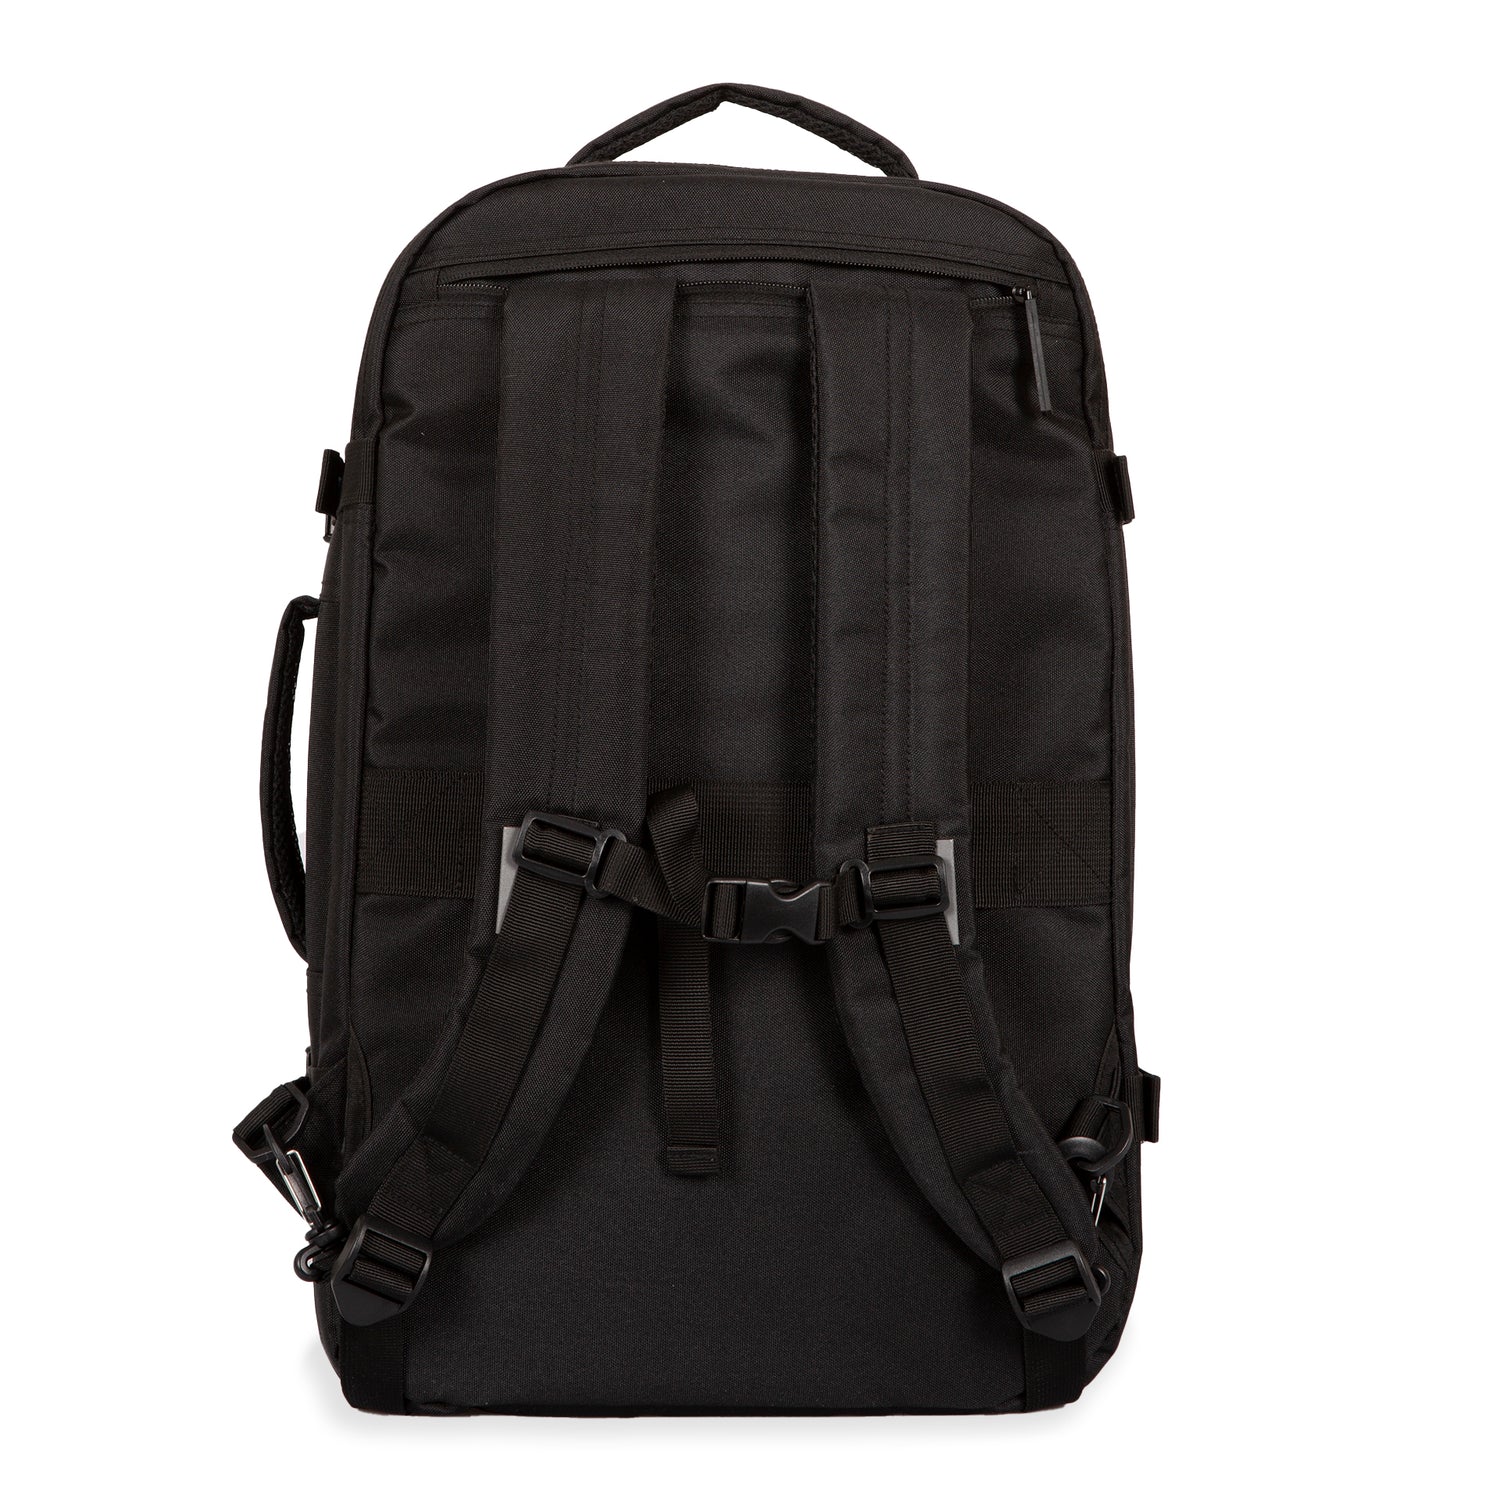 West Bay 2.0 Convertible Backpack - Bentley